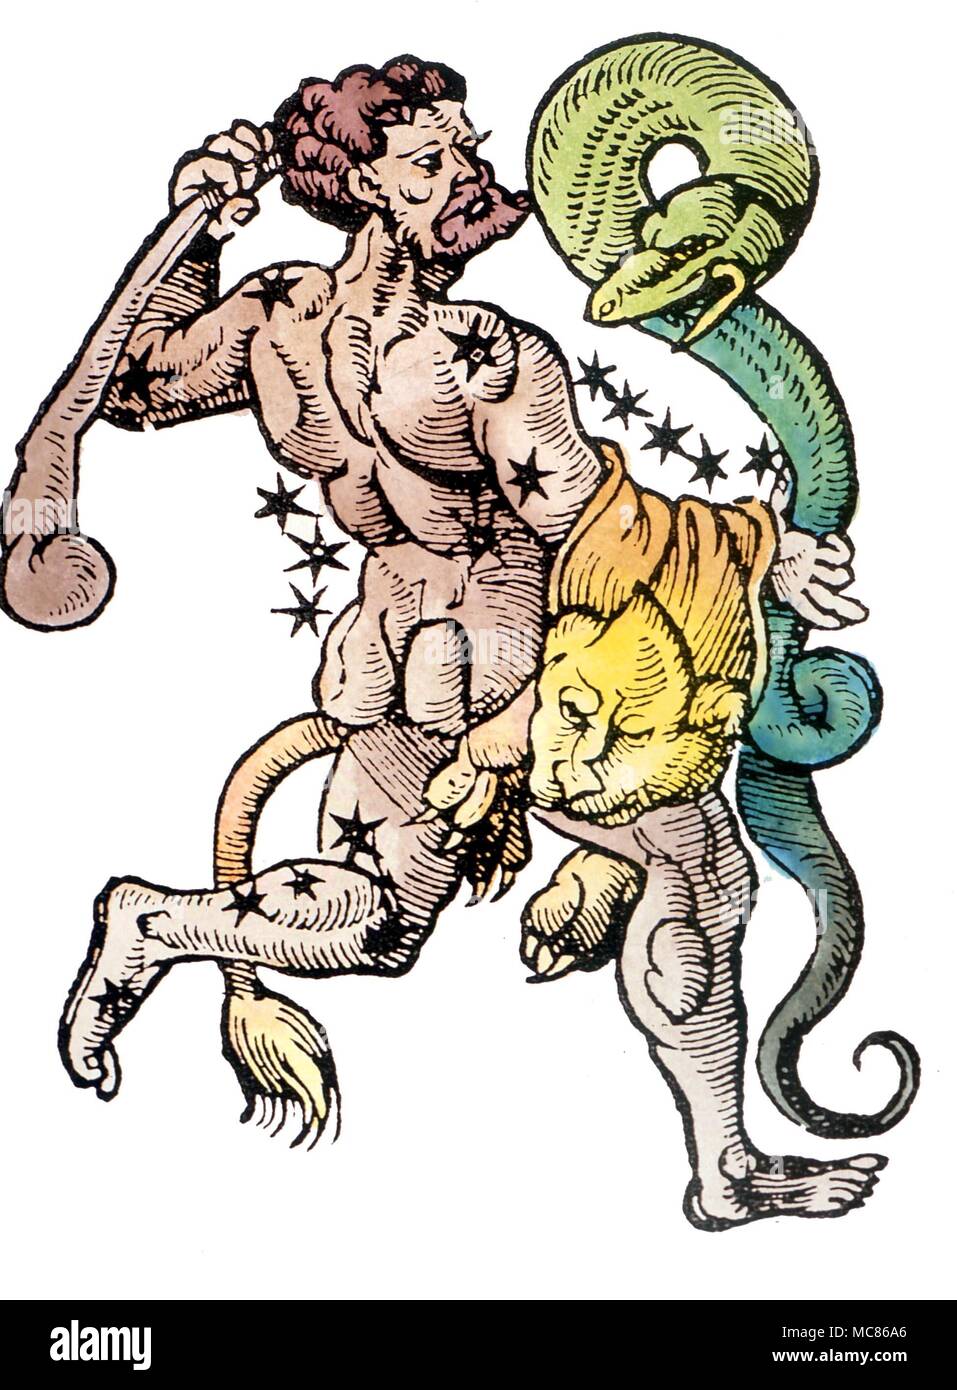 Sternbilder - Hercules Holzschnitt von ca. 1495 des Herkules die Asterismus, mit seinem Club und Lion's Haut über der Schulter Stockfoto